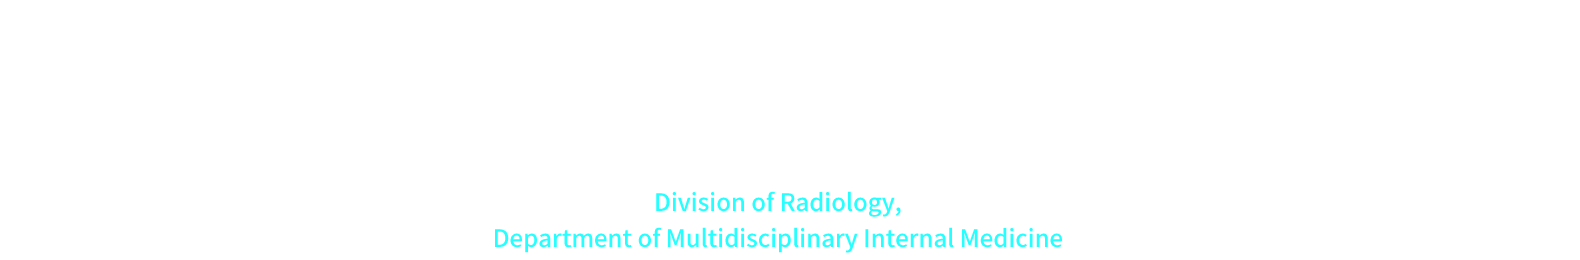 Division of Radiology, Department of Multidisciplinary Internal Medicine